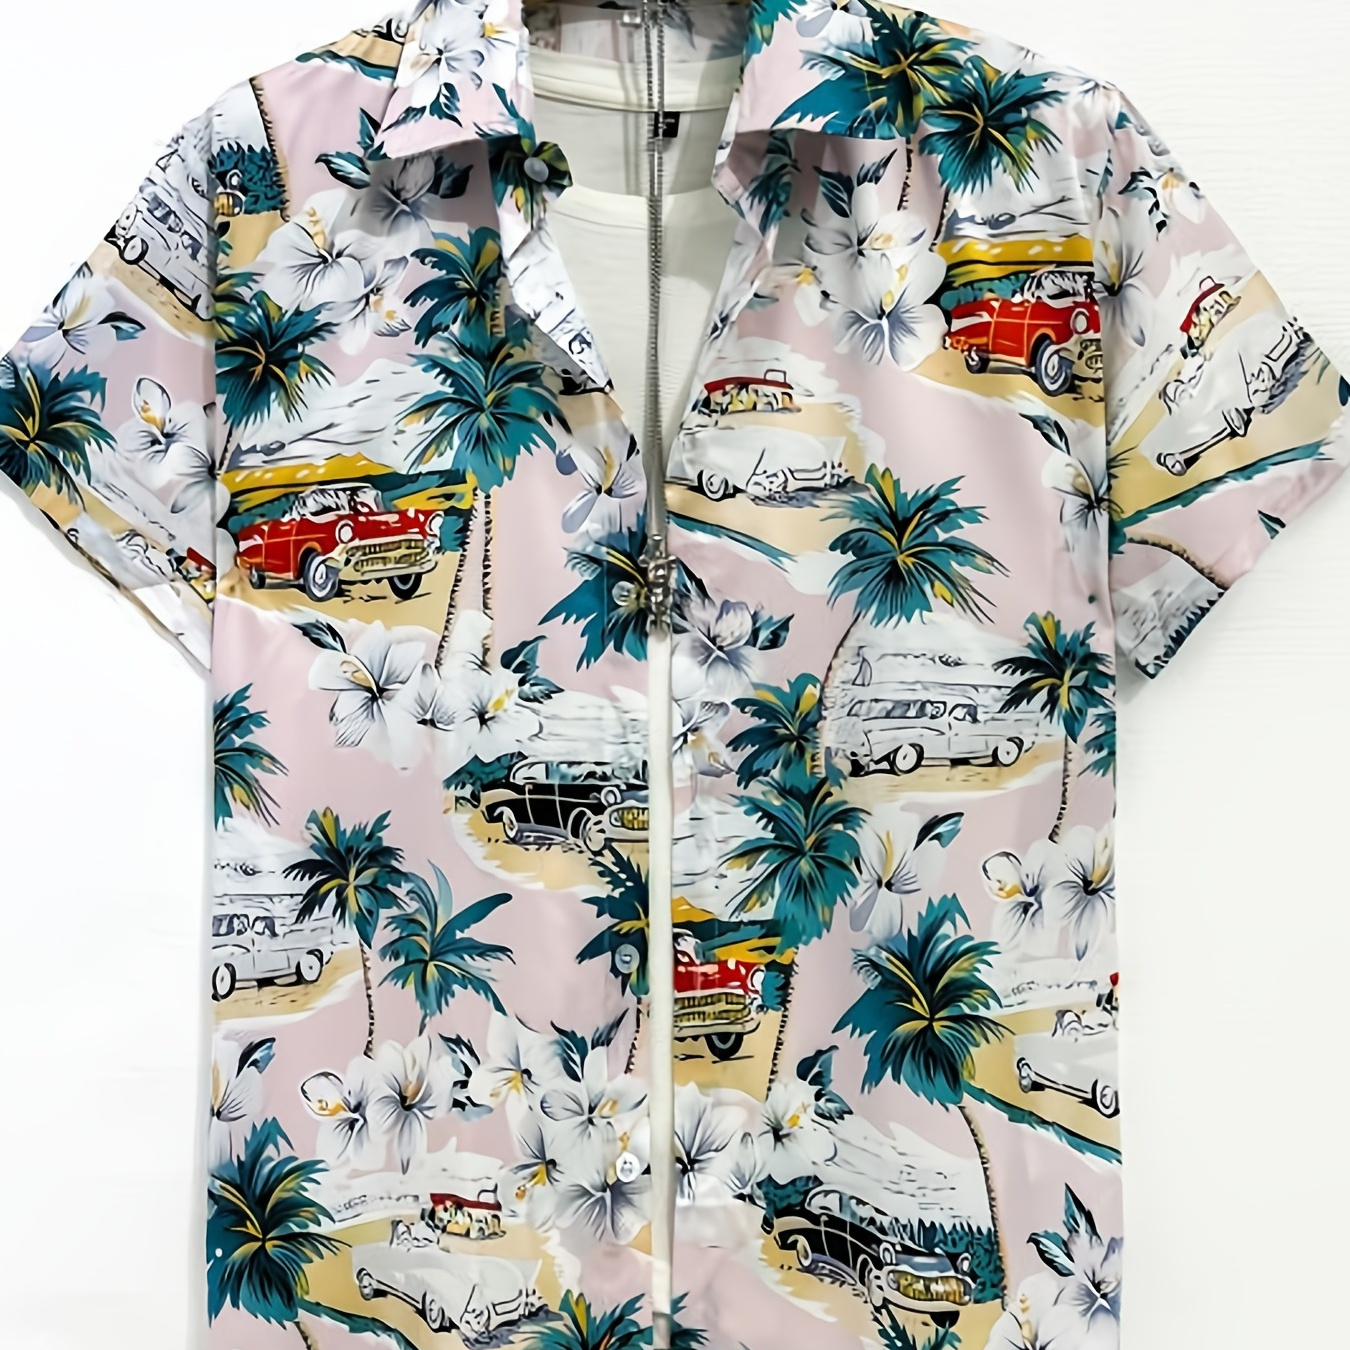 

Coconut Tree & Vintage Car Print Men's Casual Short Sleeve Shirt, Men's Shirt For Summer Vacation Resort